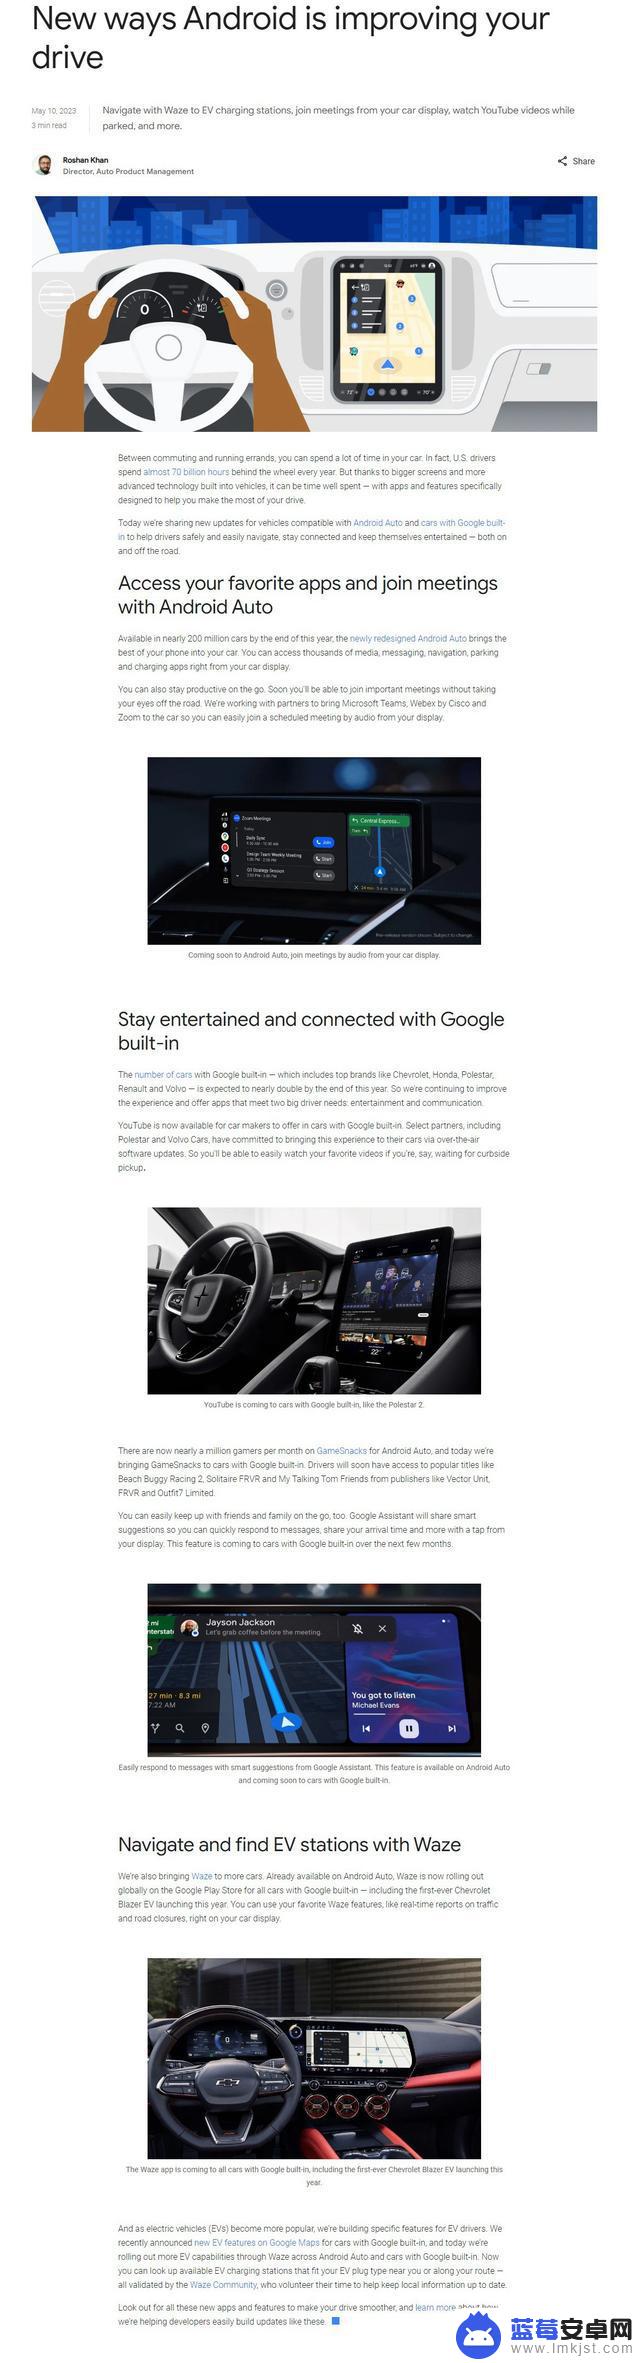 谷歌Android Automotive OS 14宣布支持多个车载显示器